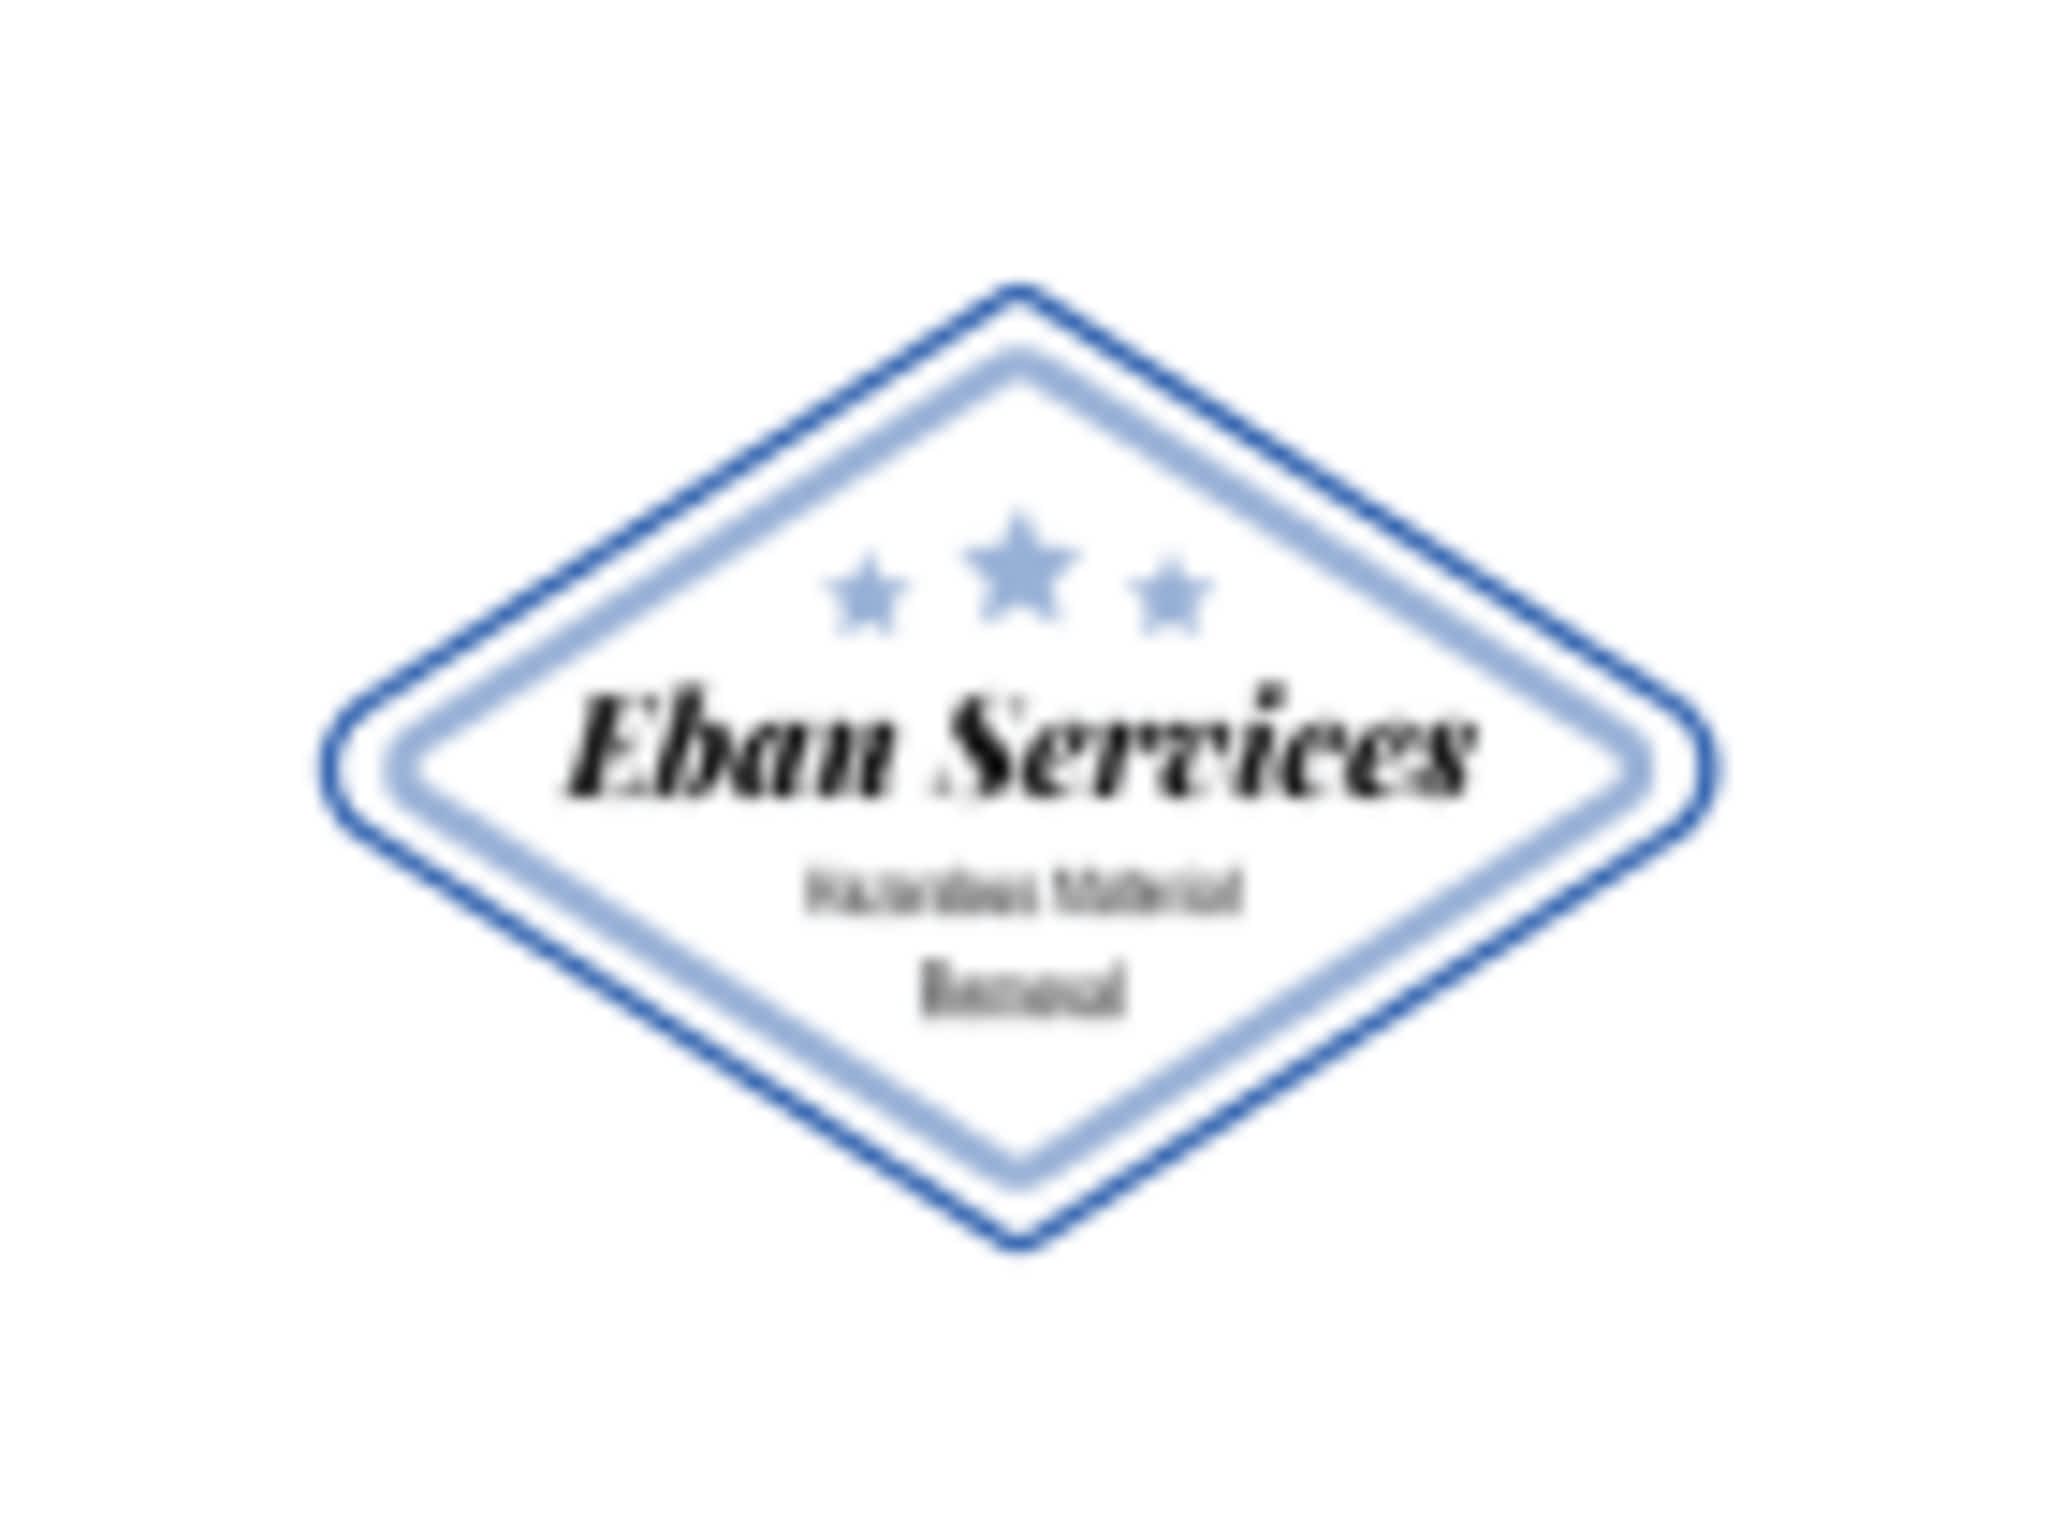 photo Eban Services Corp